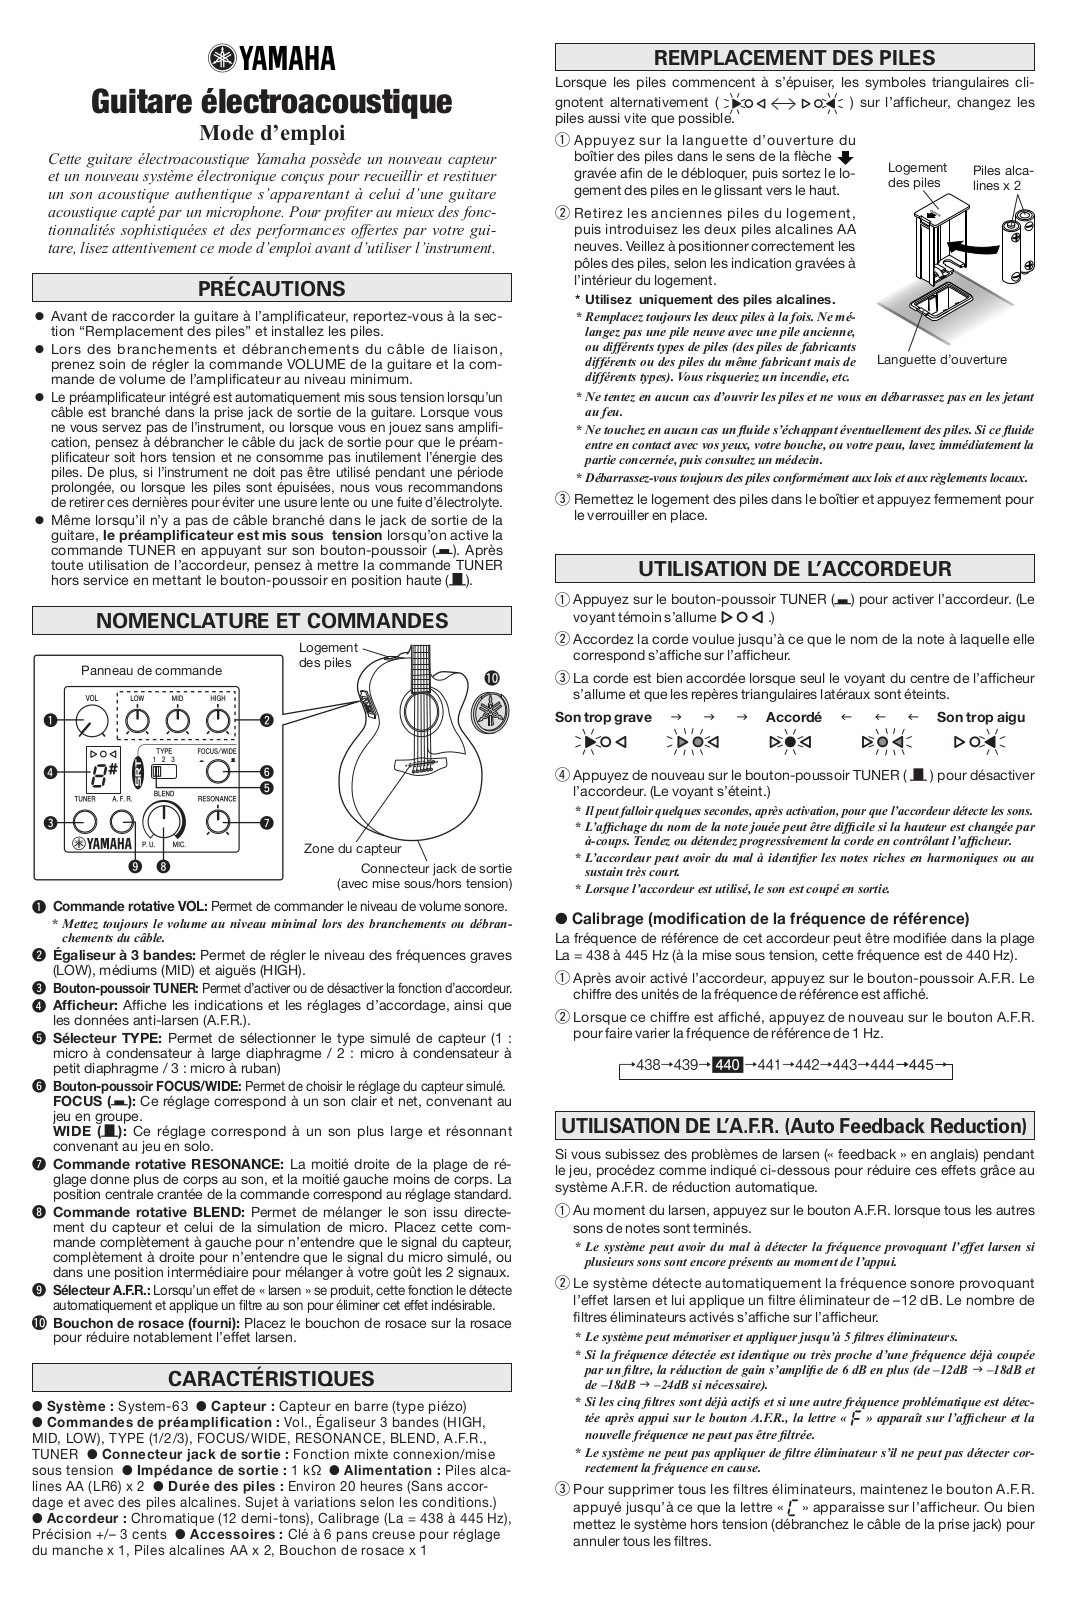 YAMAHA A3M, A3R, AC3R User Manual